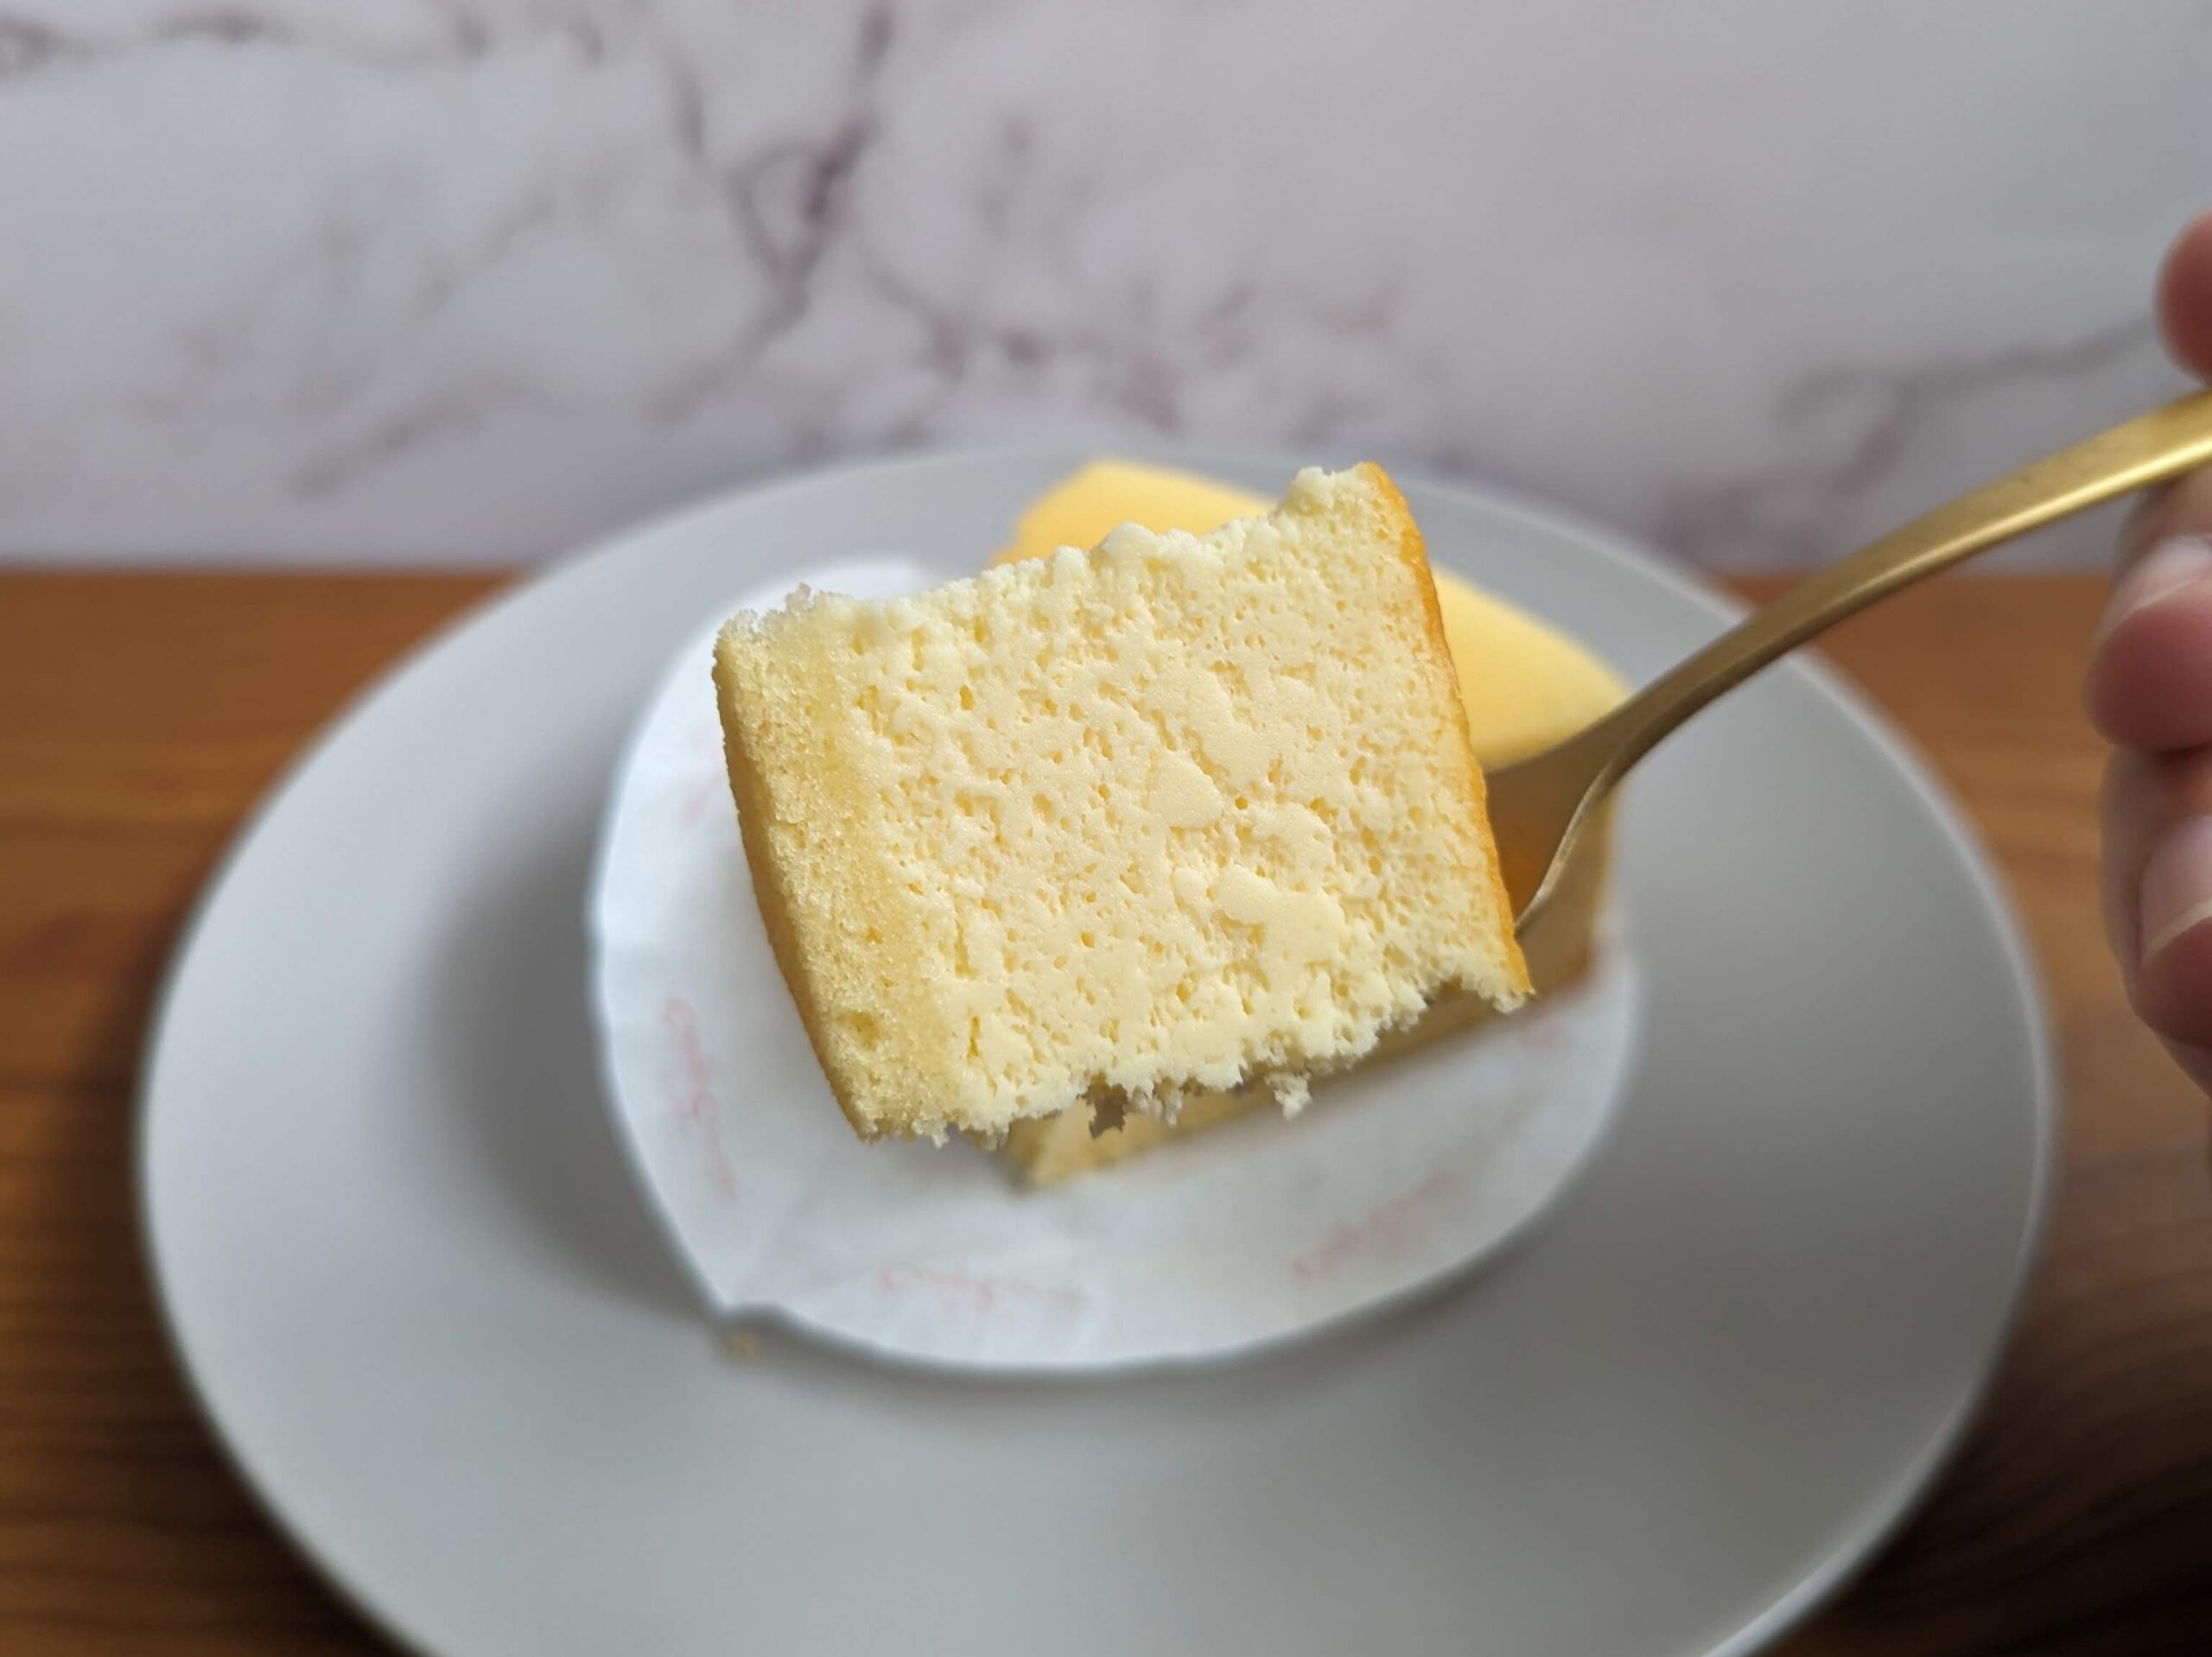 銀座コージーコーナーの「チーズケーキ」の写真 (7)